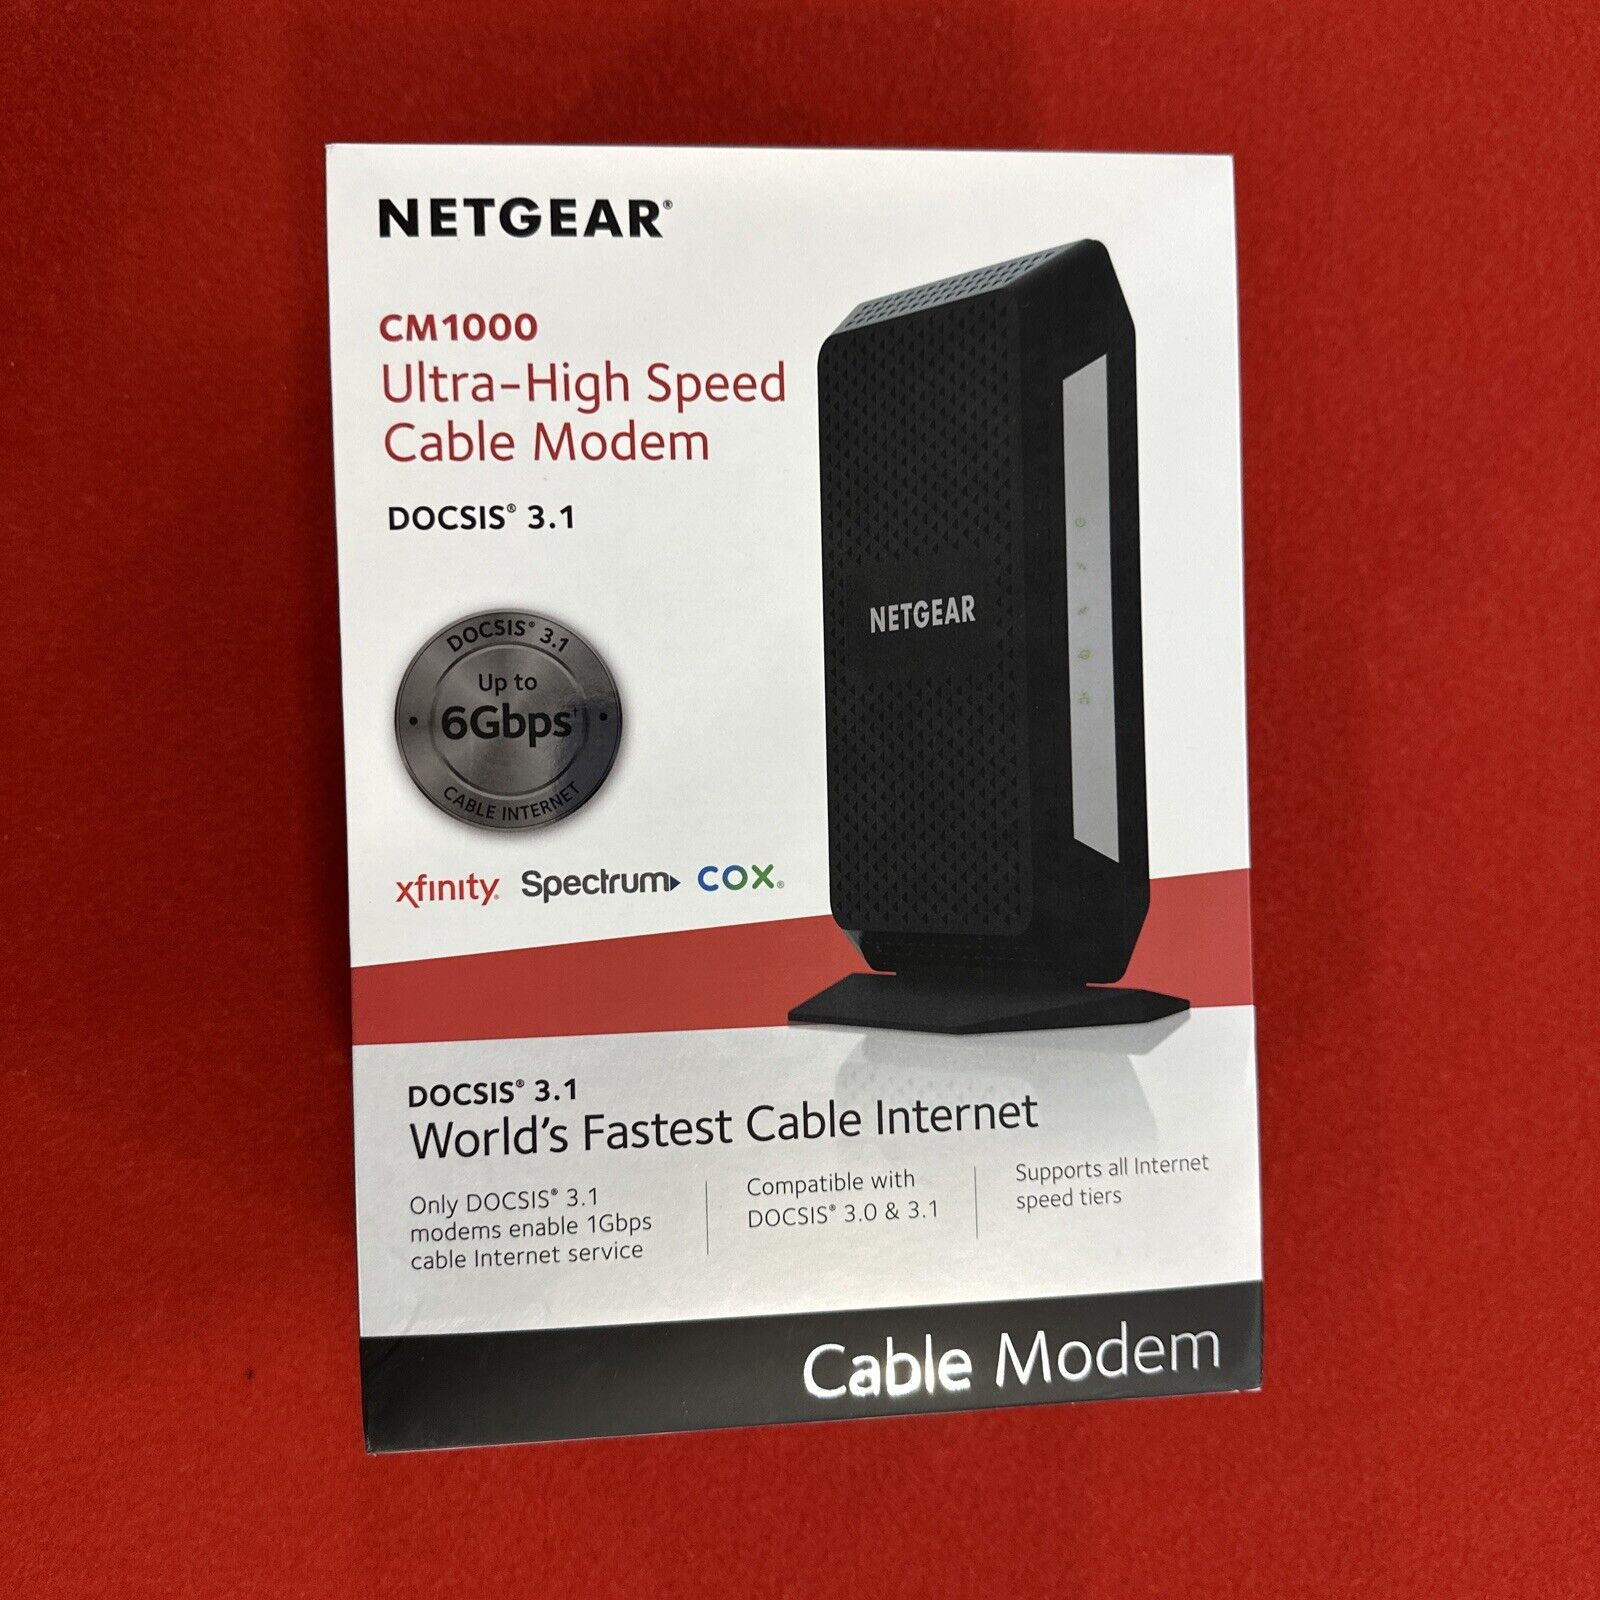 Netgear CM1000 Ultra-High speed Cable Modem - Docsis 3.1